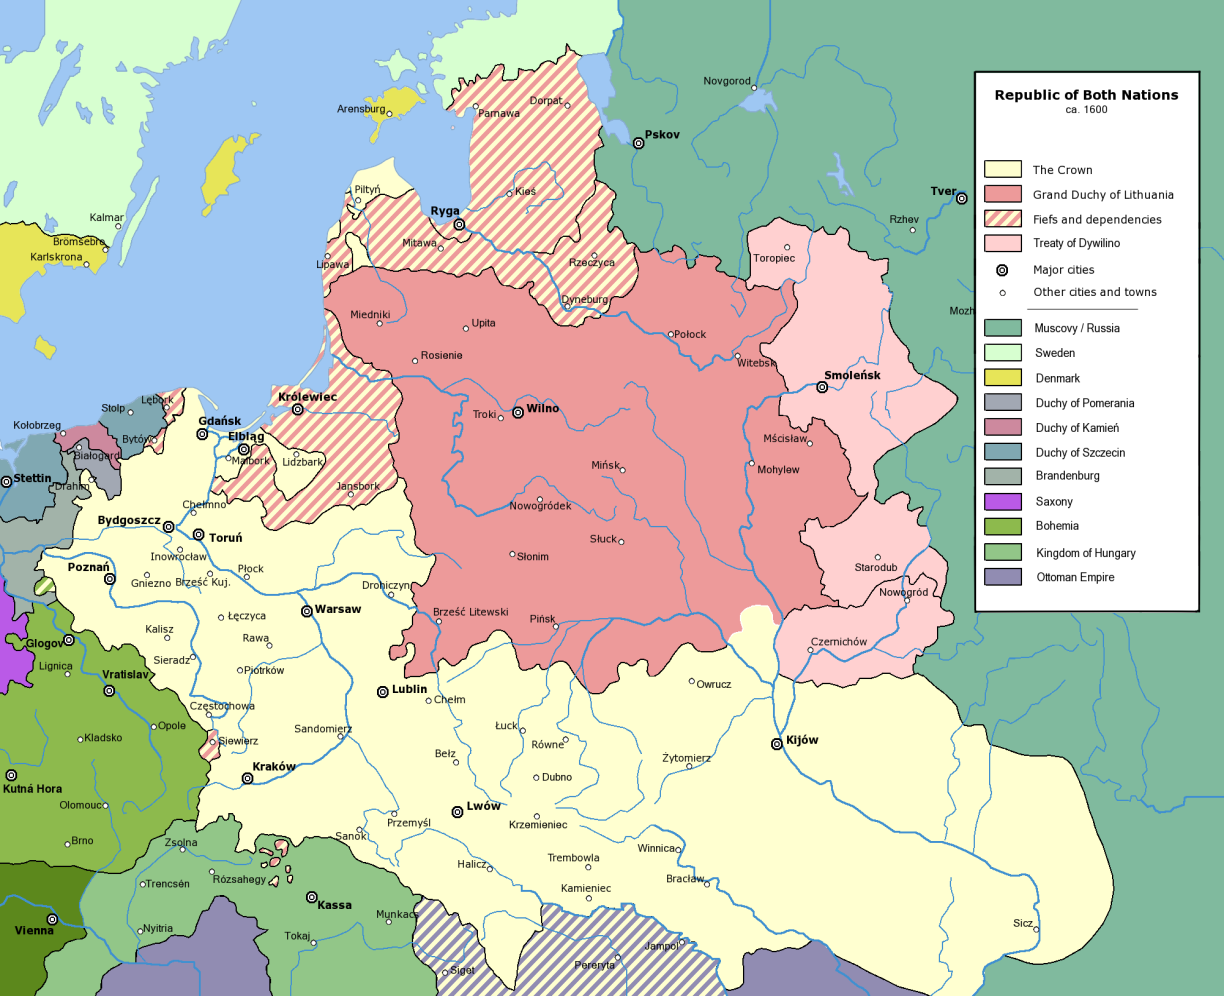 Mapa: Polsko-litevský stát jako Republika obou národů Období 123 let, kdy Polsko zmizelo z mapy světa, jen vzdáleně